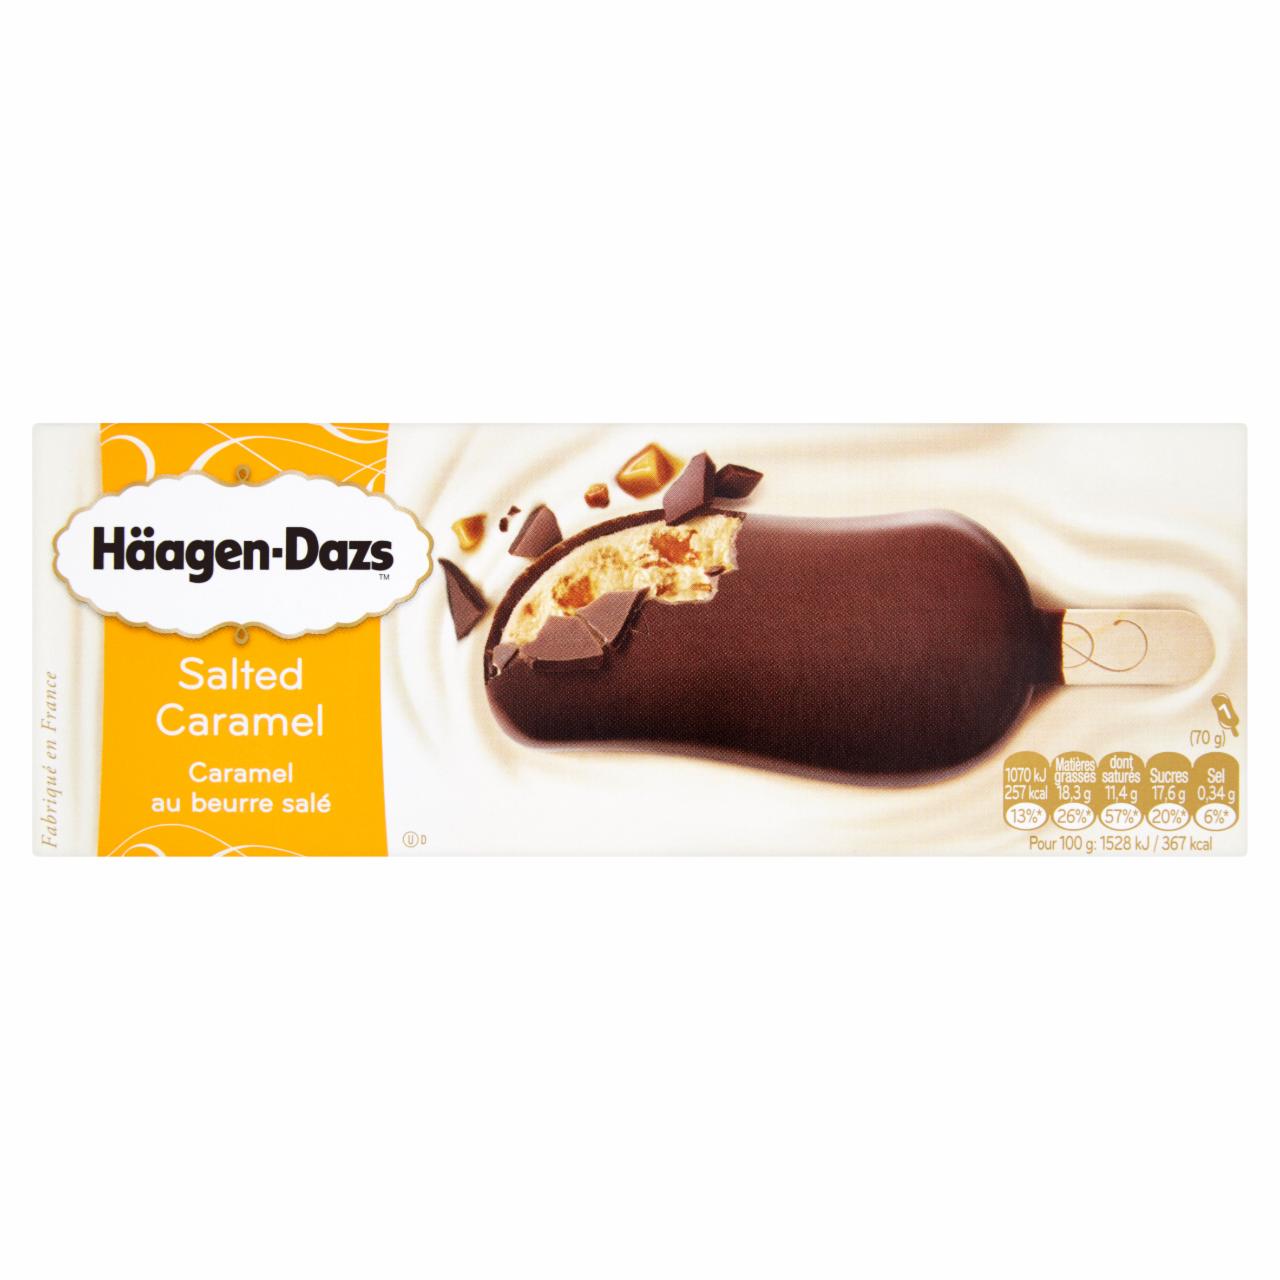 Képek - Häagen-Dazs karamell jégkrém Belga csokoládébevonattal és sós karamell darabokkal 80 ml